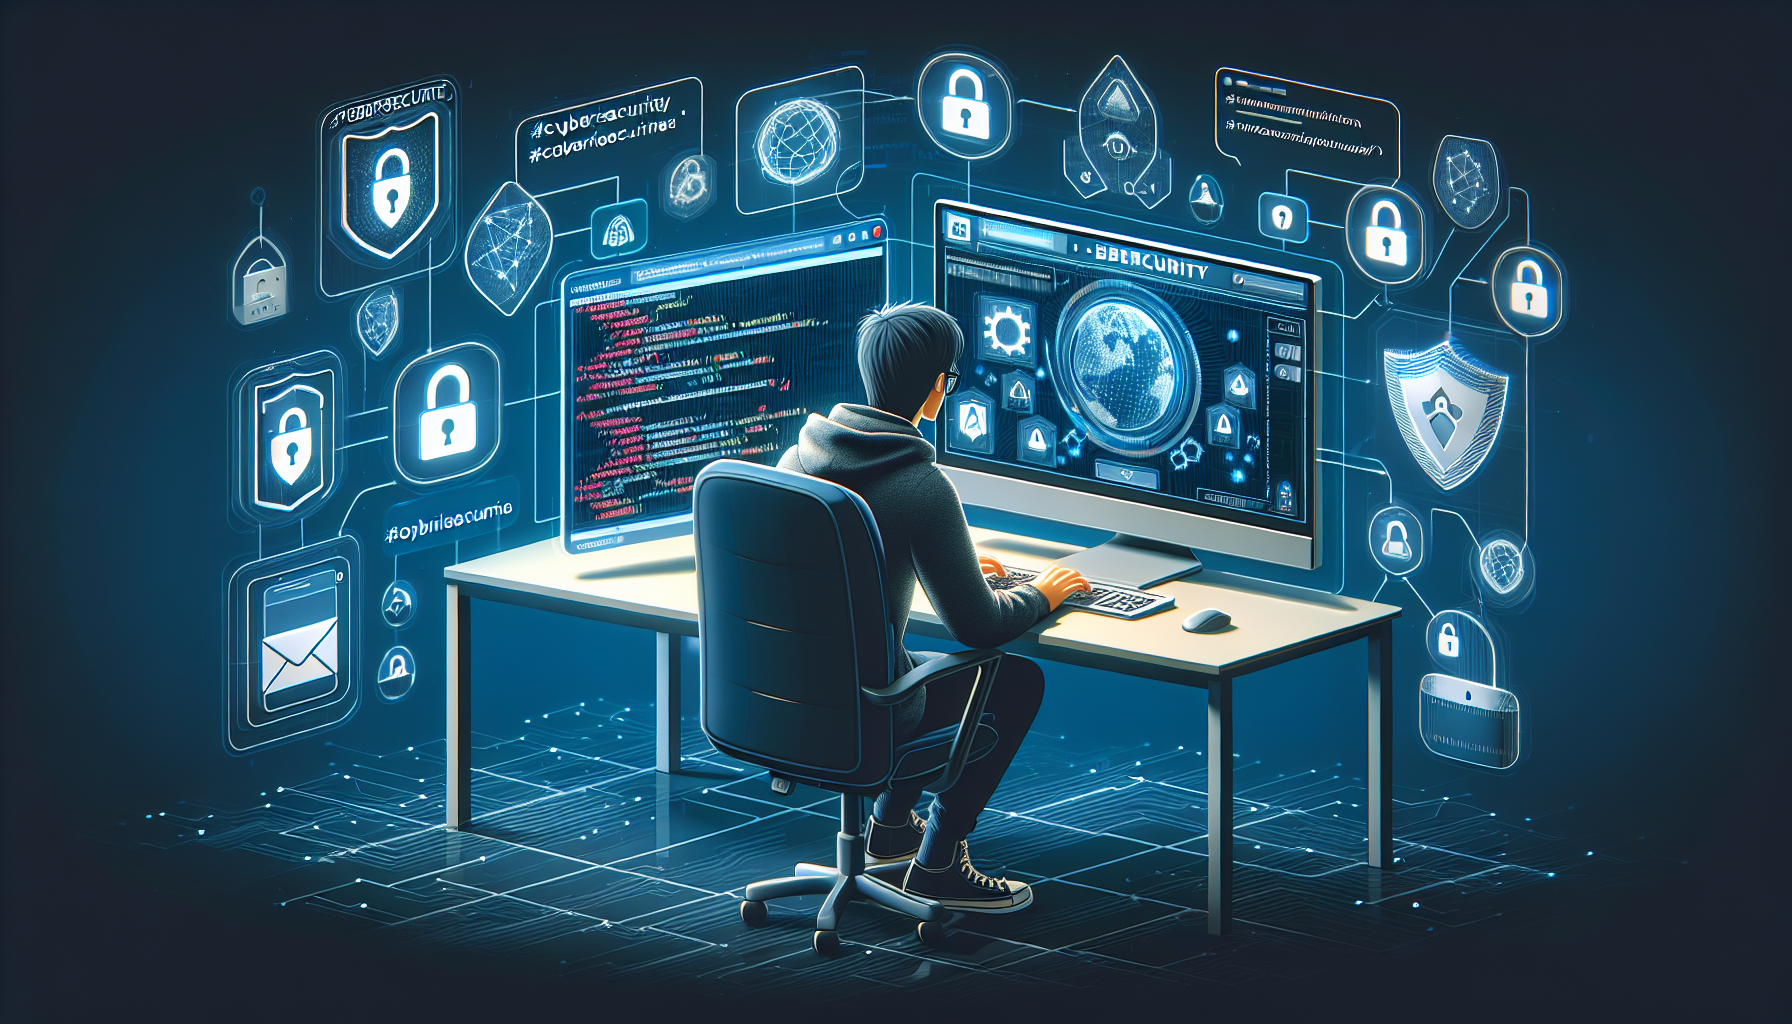 découvrez notre formation en ligne en cybersécurité pour comprendre les enjeux et les menaces actuelles, et apprendre à protéger vos données et votre entreprise.